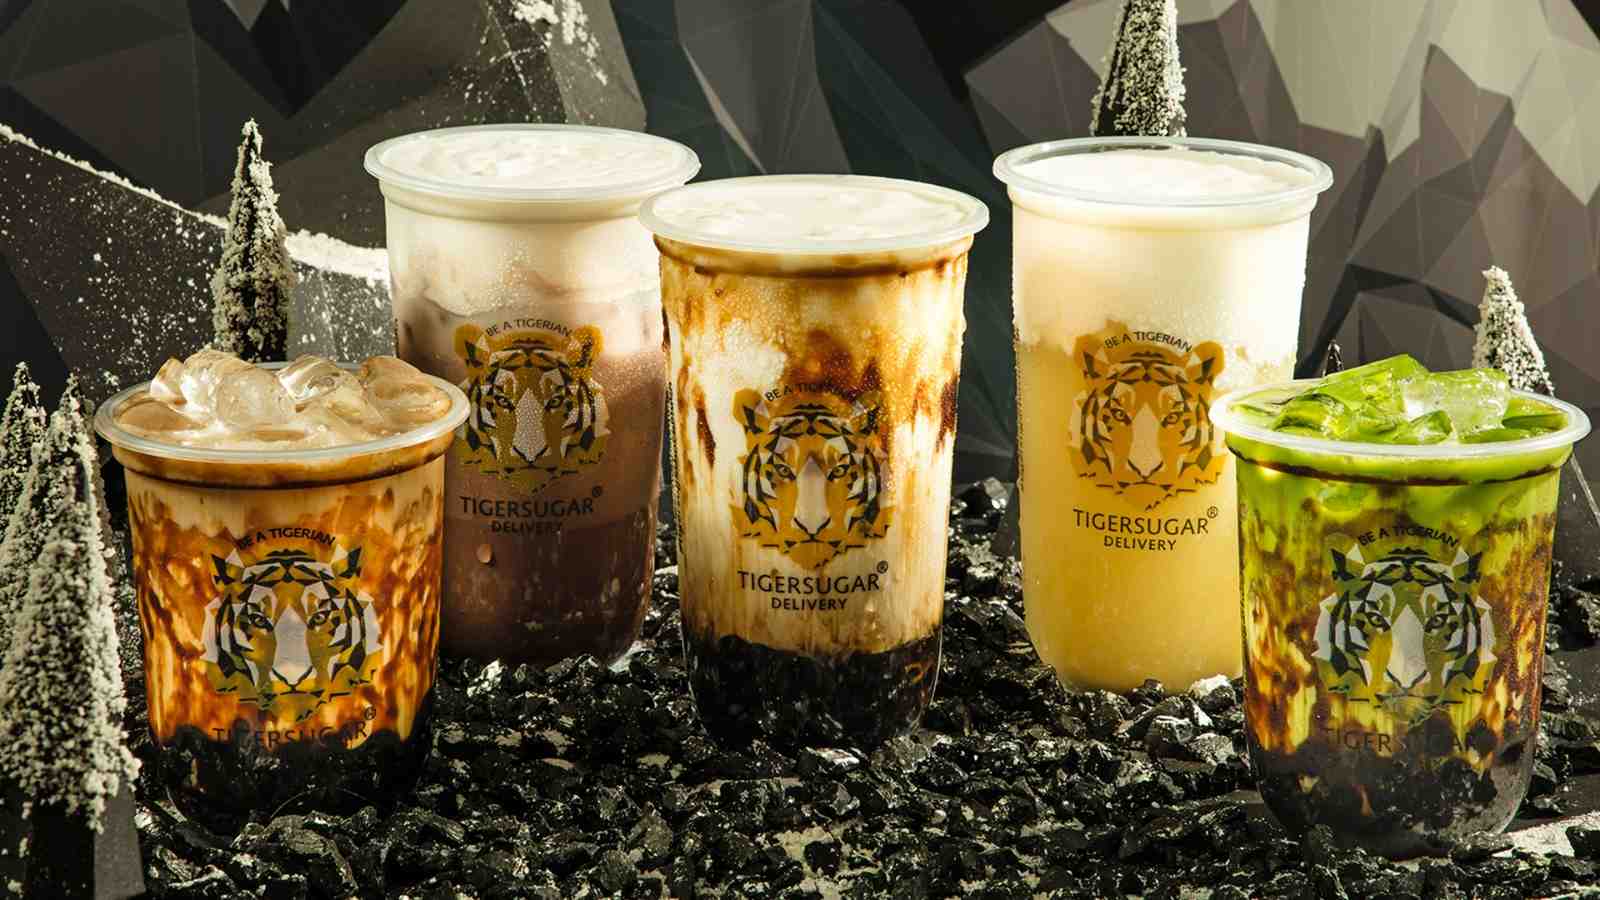 Uống trà sữa Tiger Sugar Delivery “thả ga” với voucher đồng giá 23.000 đồng